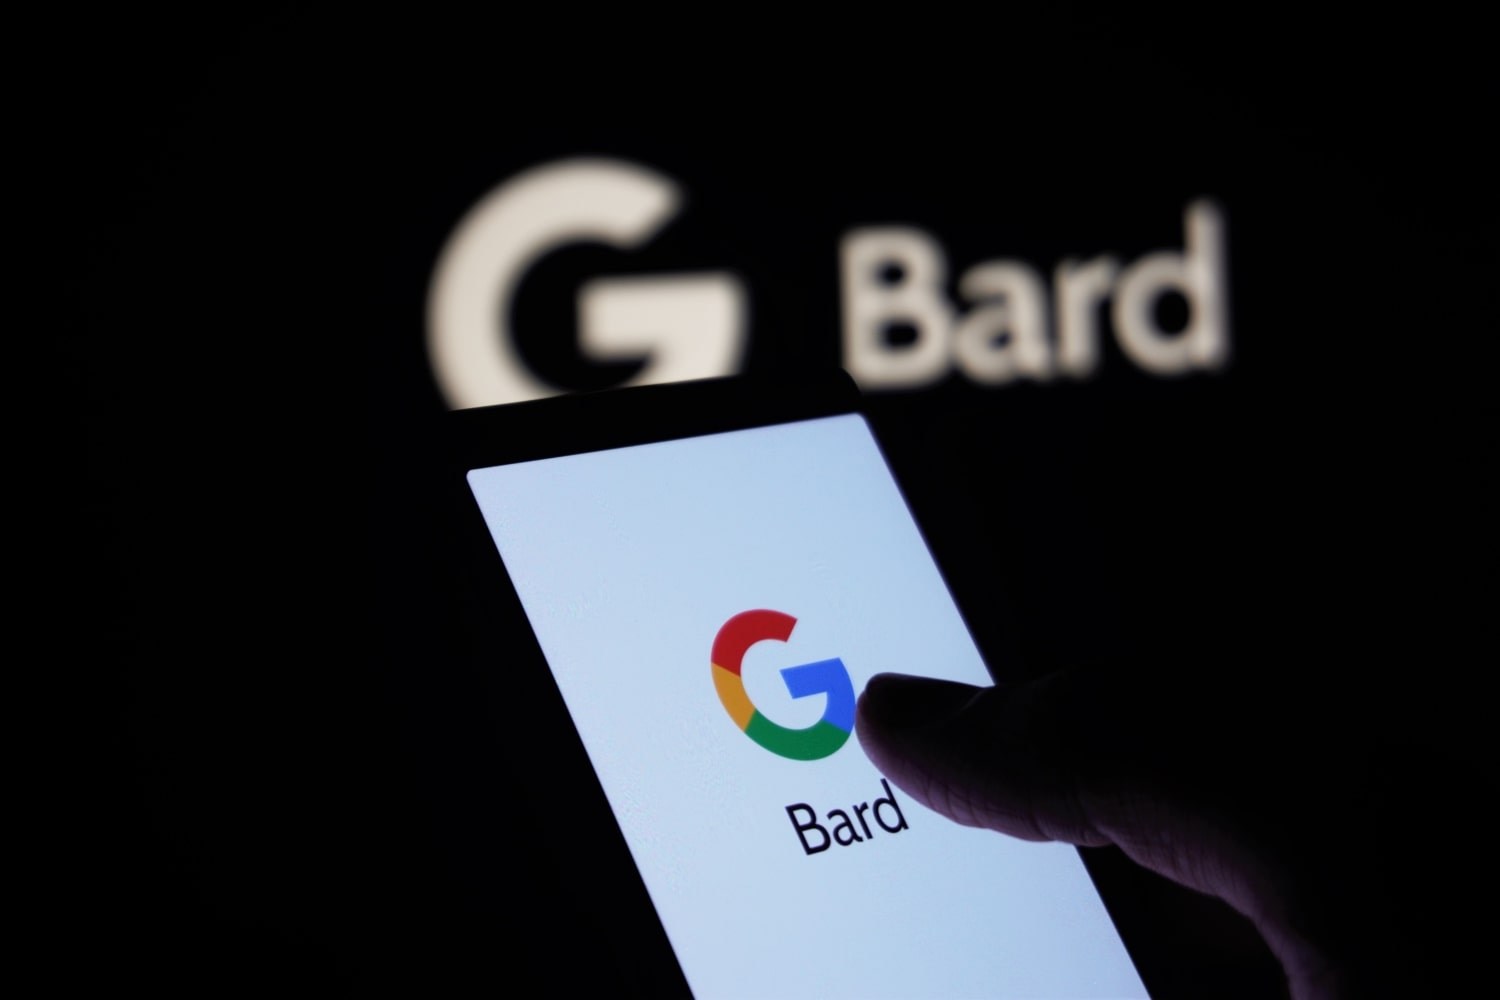 Uma pessoa segura um telefone com o logotipo do Google e a palavra 'Bard' na tela.  Ao fundo está um logotipo do Google Bard.